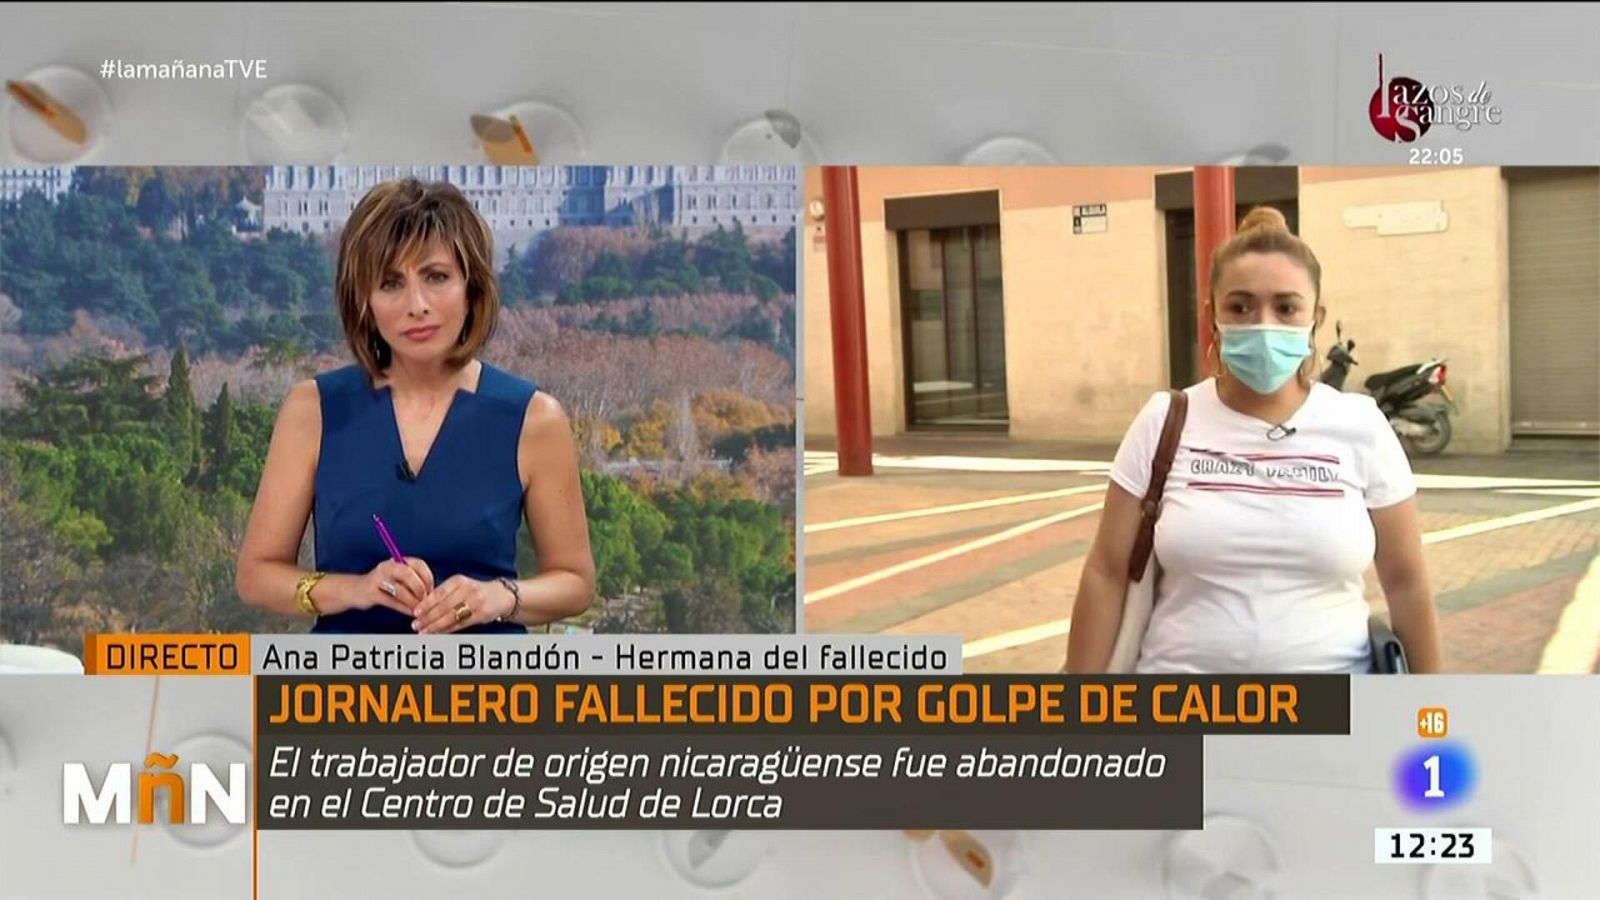 Un temporero fue abandonado en un centro de salud en Lorca